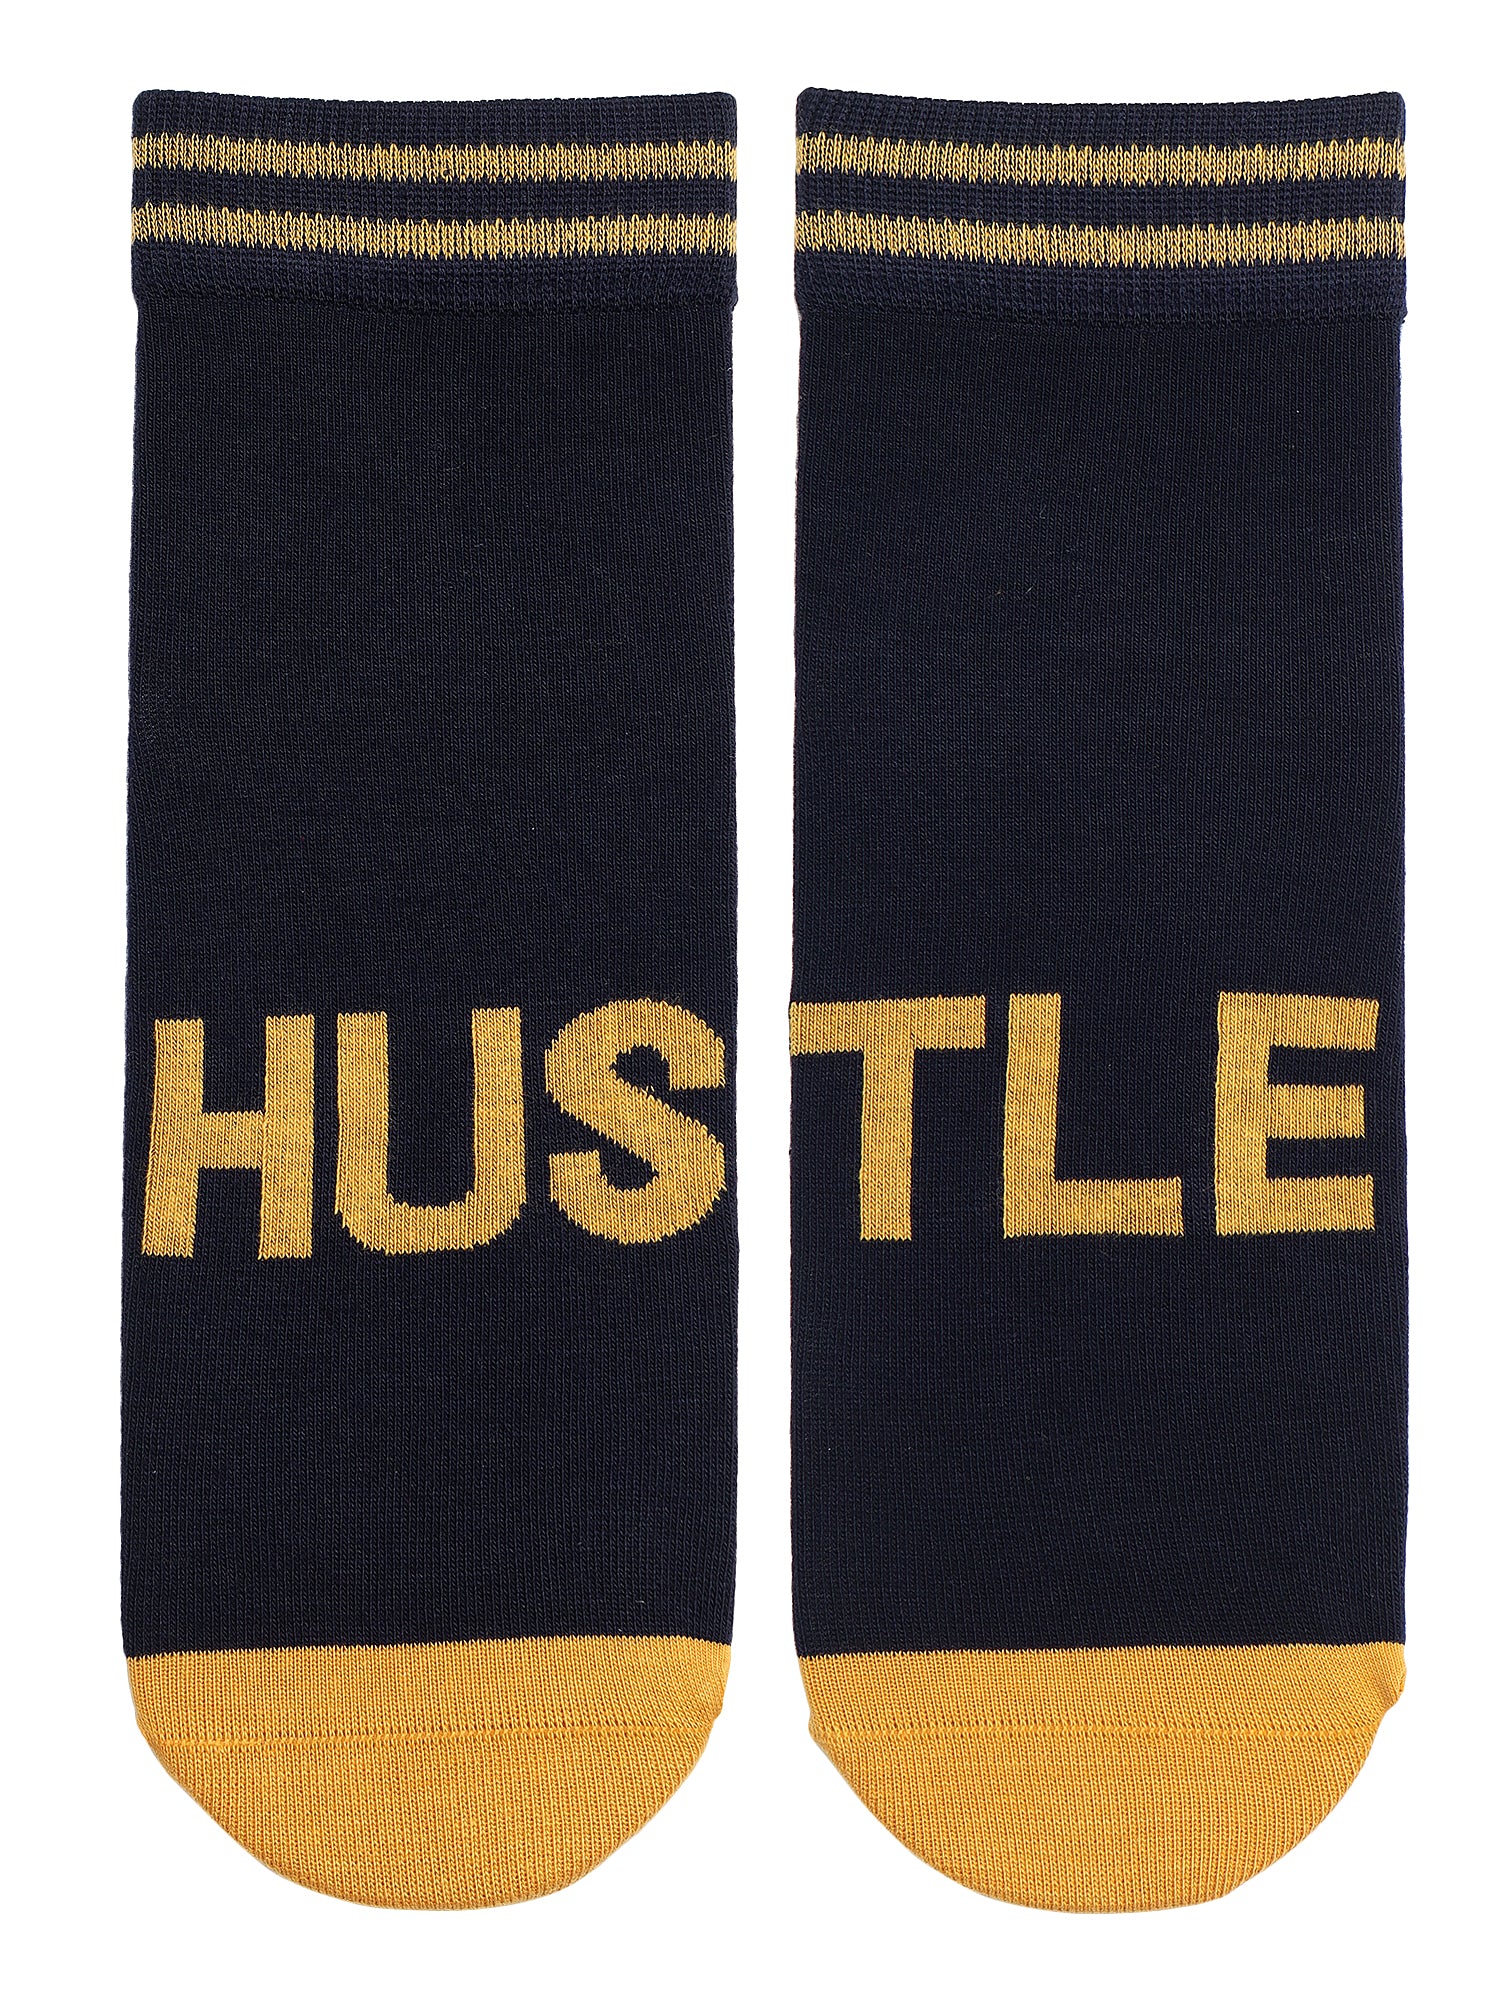 Hustle Navy Blue Ankle Socks 1 Pair